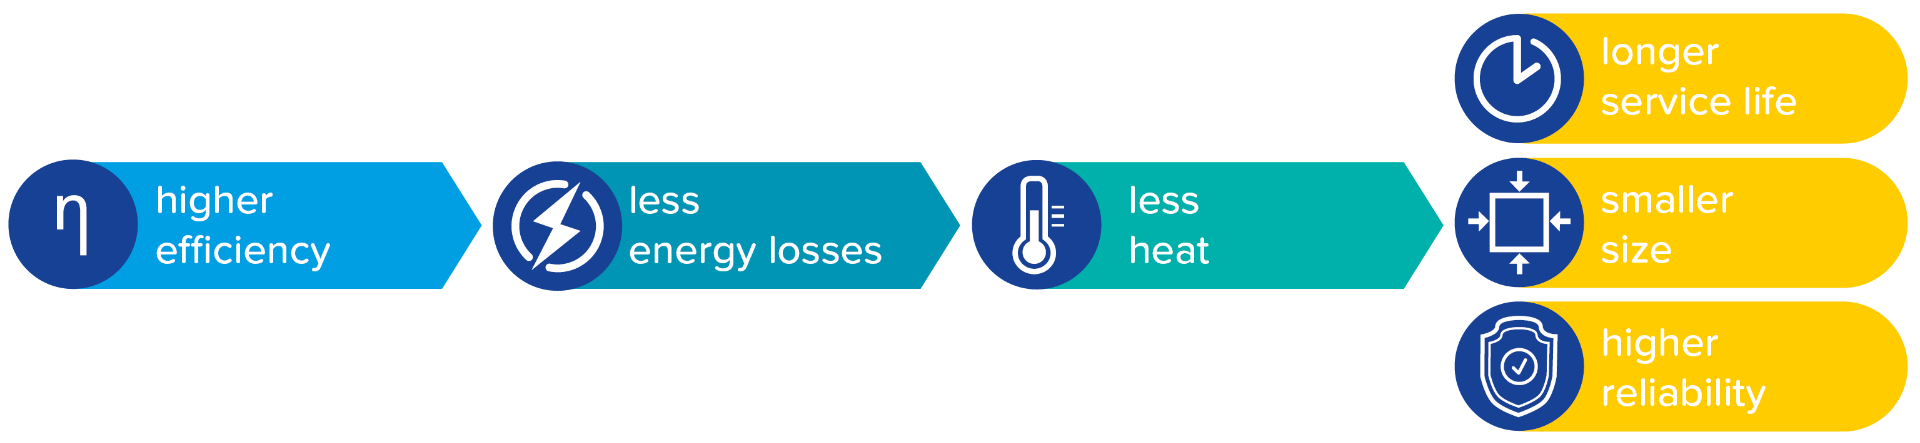 高效率可以减少热量形式的能量损耗。这一点反映在电源设备使用寿命更长、尺寸更小、可靠性更高等方面。